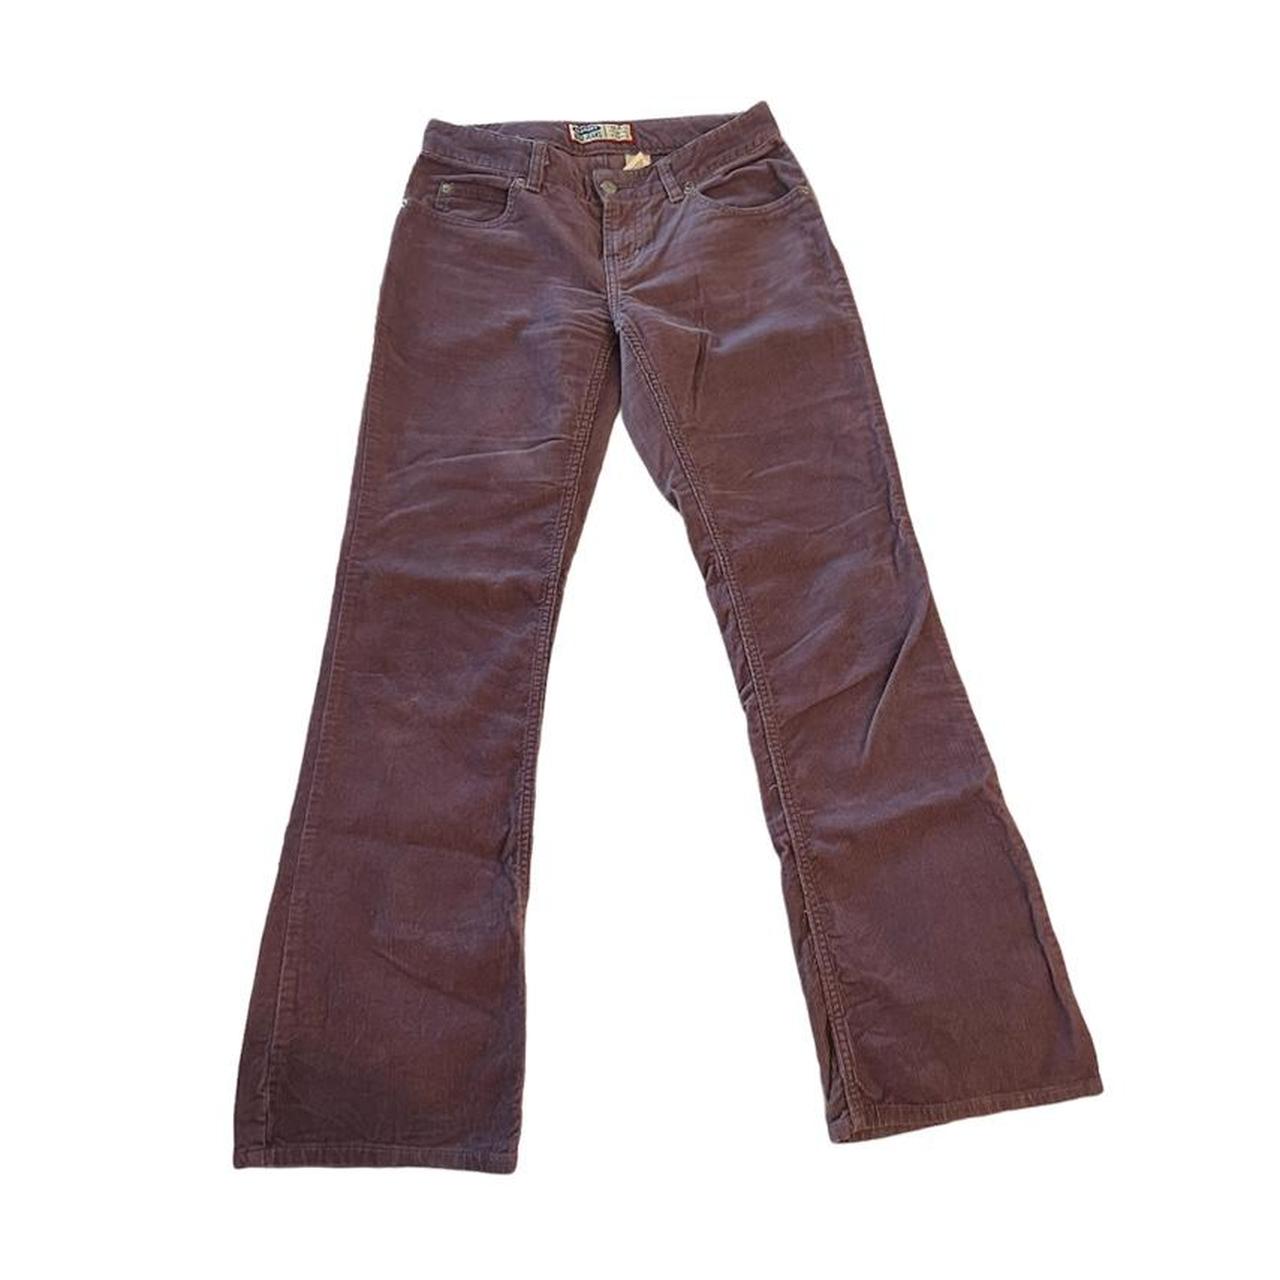 Levi’s purple corduroy low-rise pants. Fits 29” low... - Depop